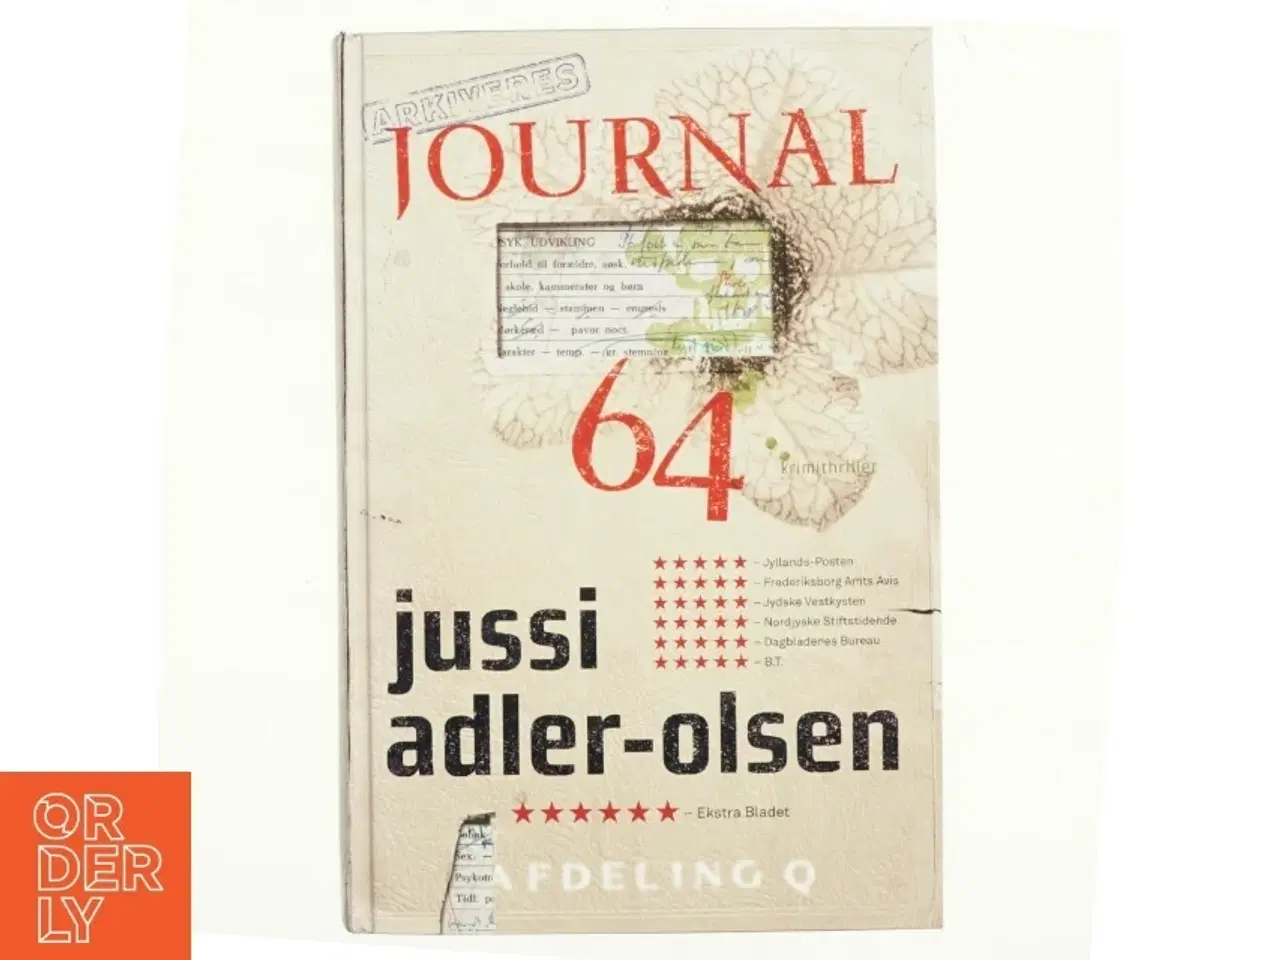 Billede 1 - Journal 64 : krimithriller af Jussi Adler-Olsen (Bog)